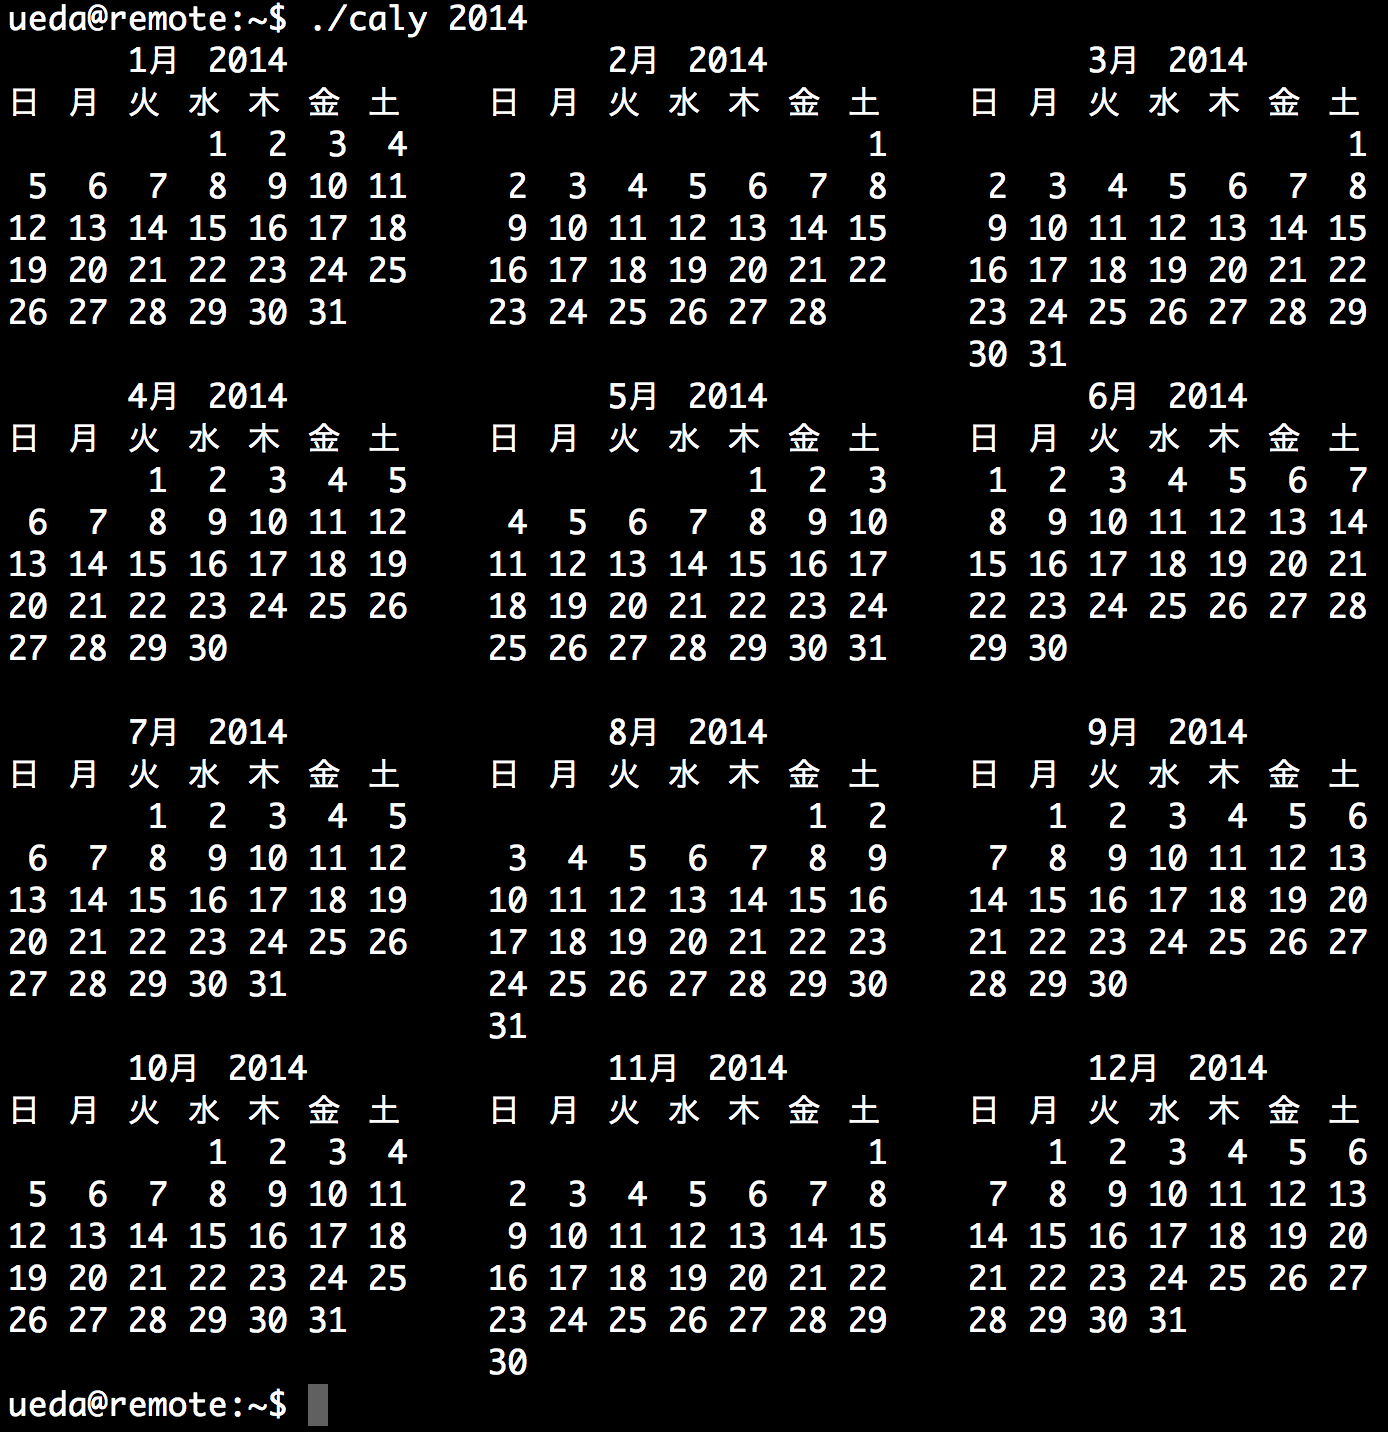 一年分のカレンダーを表示するシェルスクリプト 上田ブログ